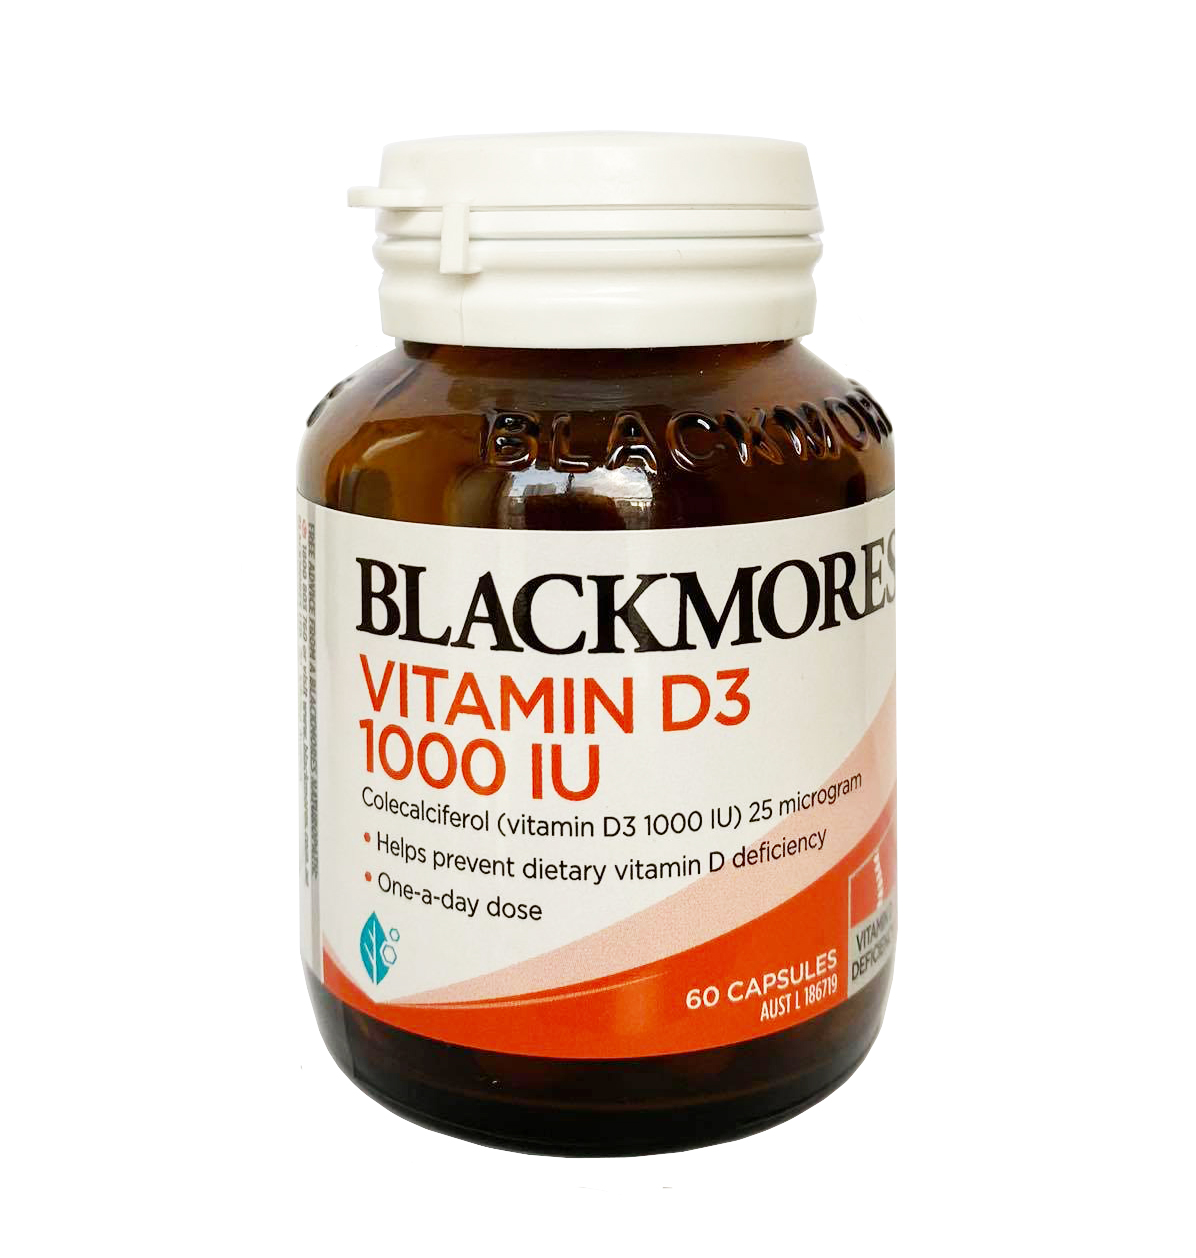 Tại sao nên chọn vitamin D3 Blackmores thay vì vitamin D2?
